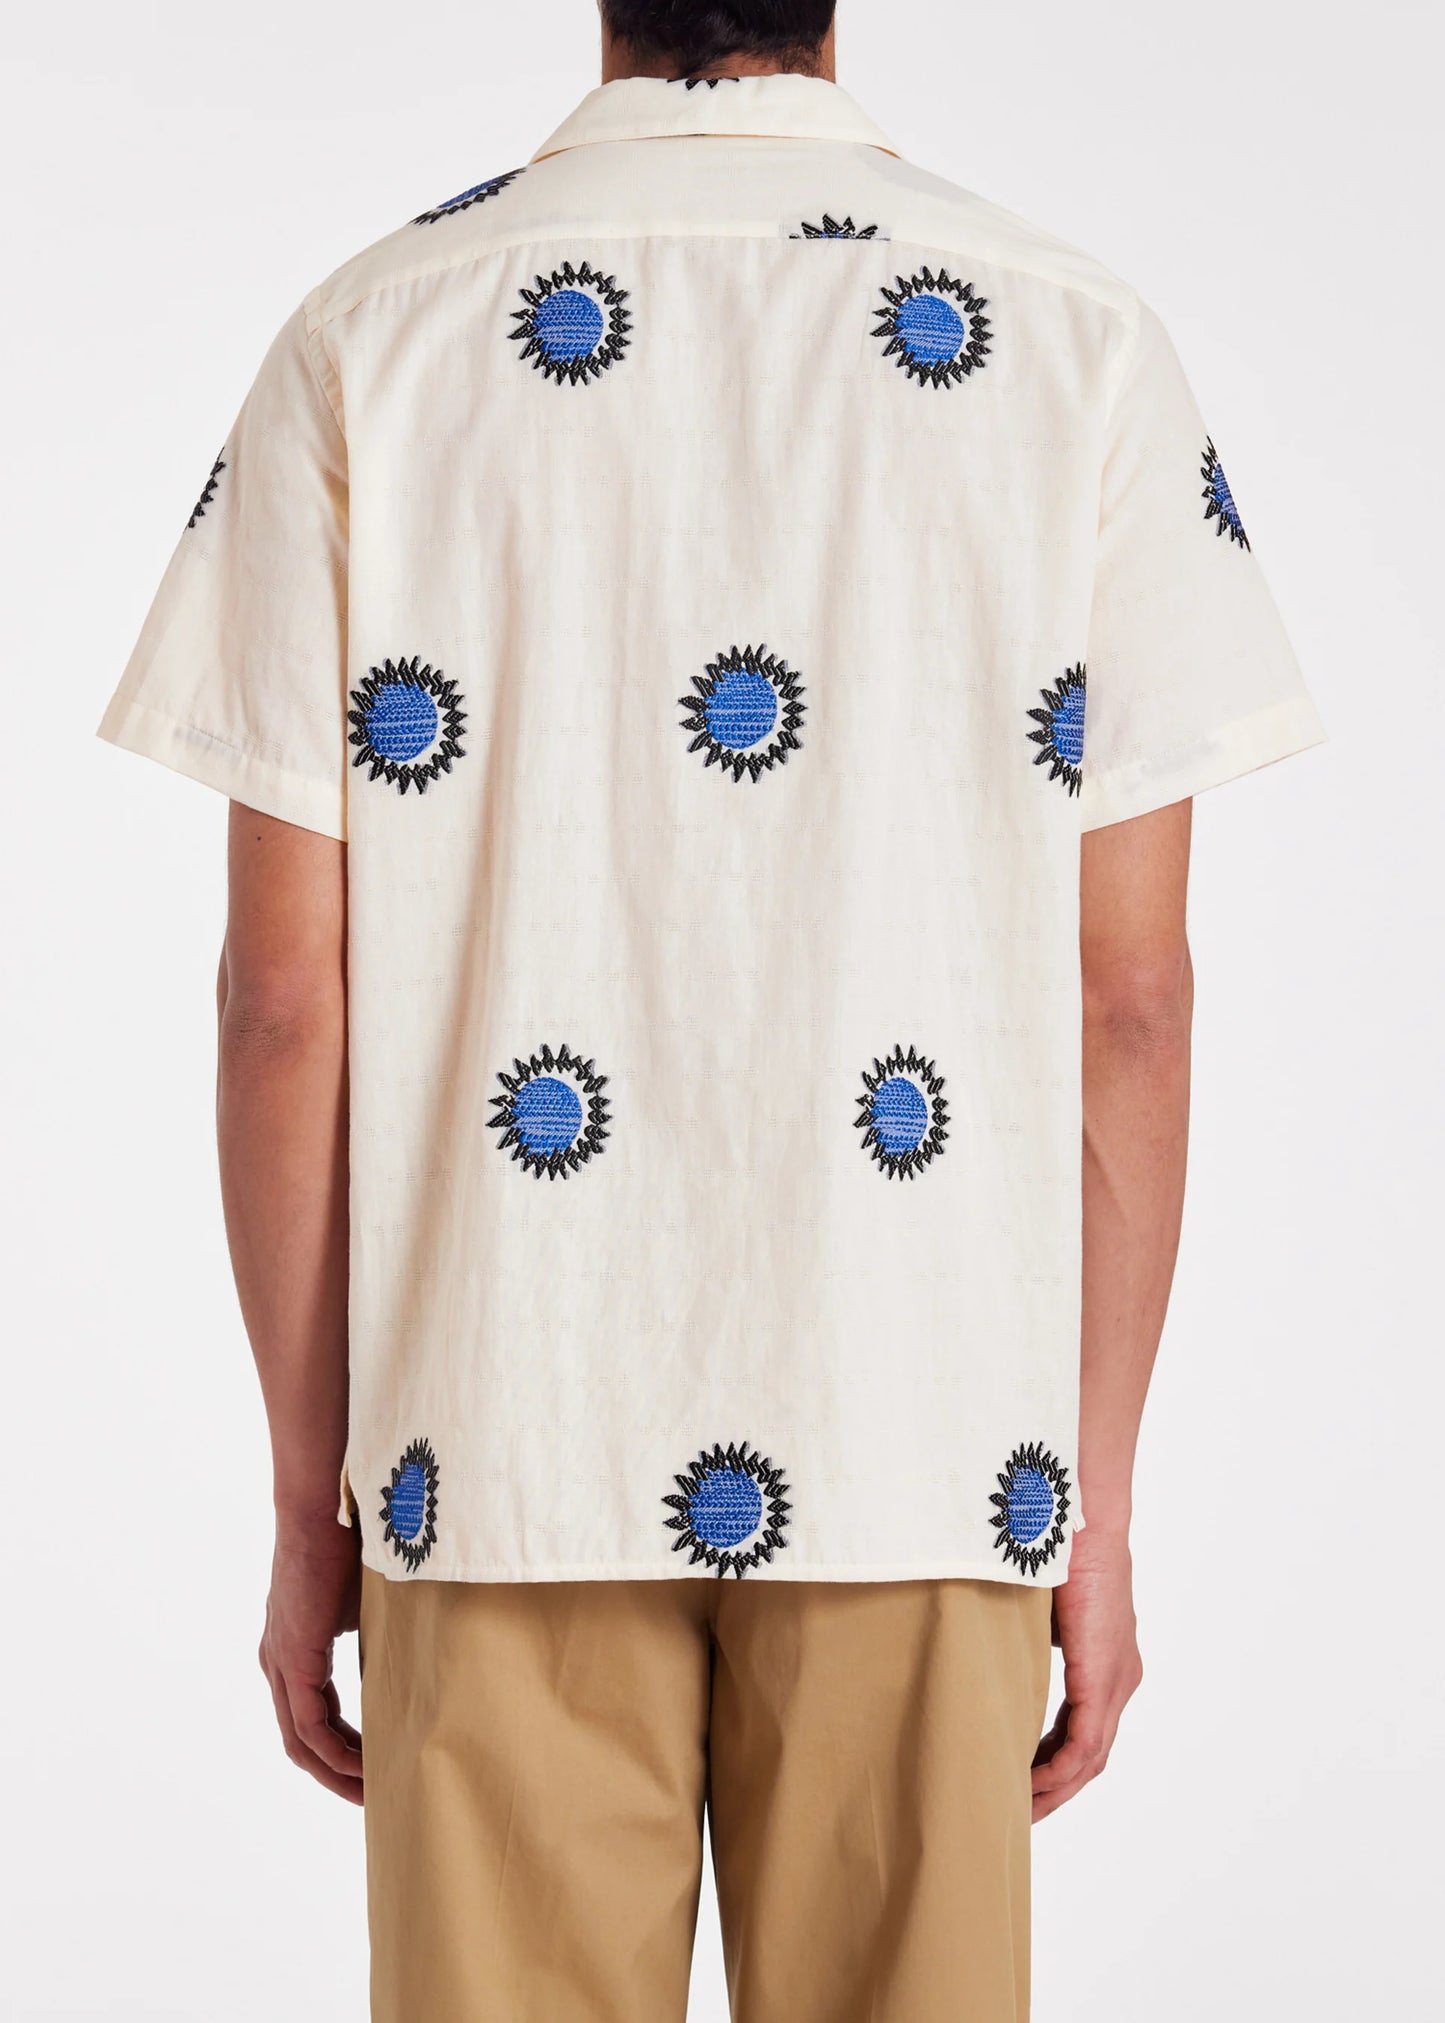 Paul Smith White Cotton-Blend Fil Coupé 'Sun' Shirt